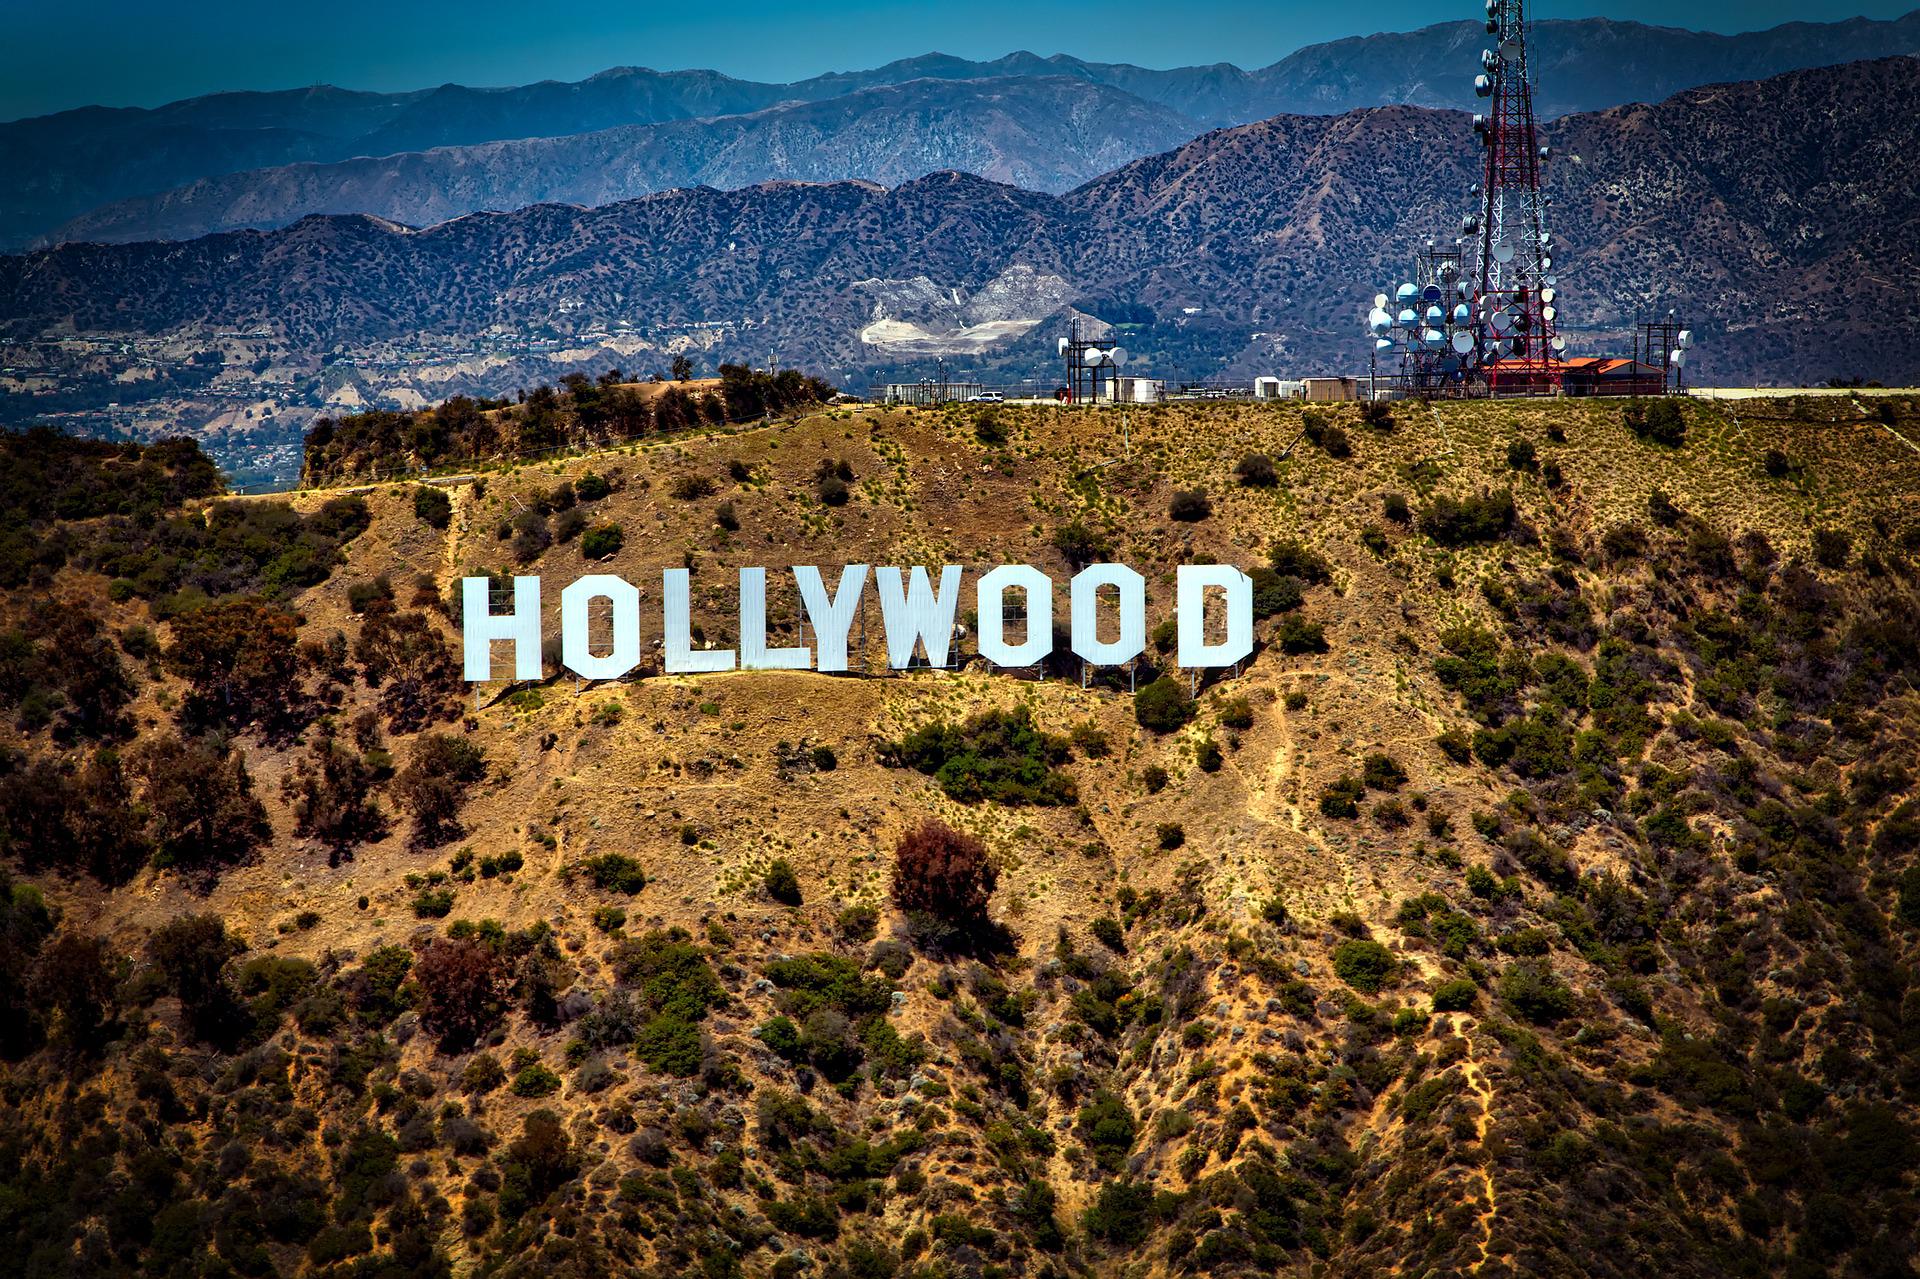 Hollywood in LA